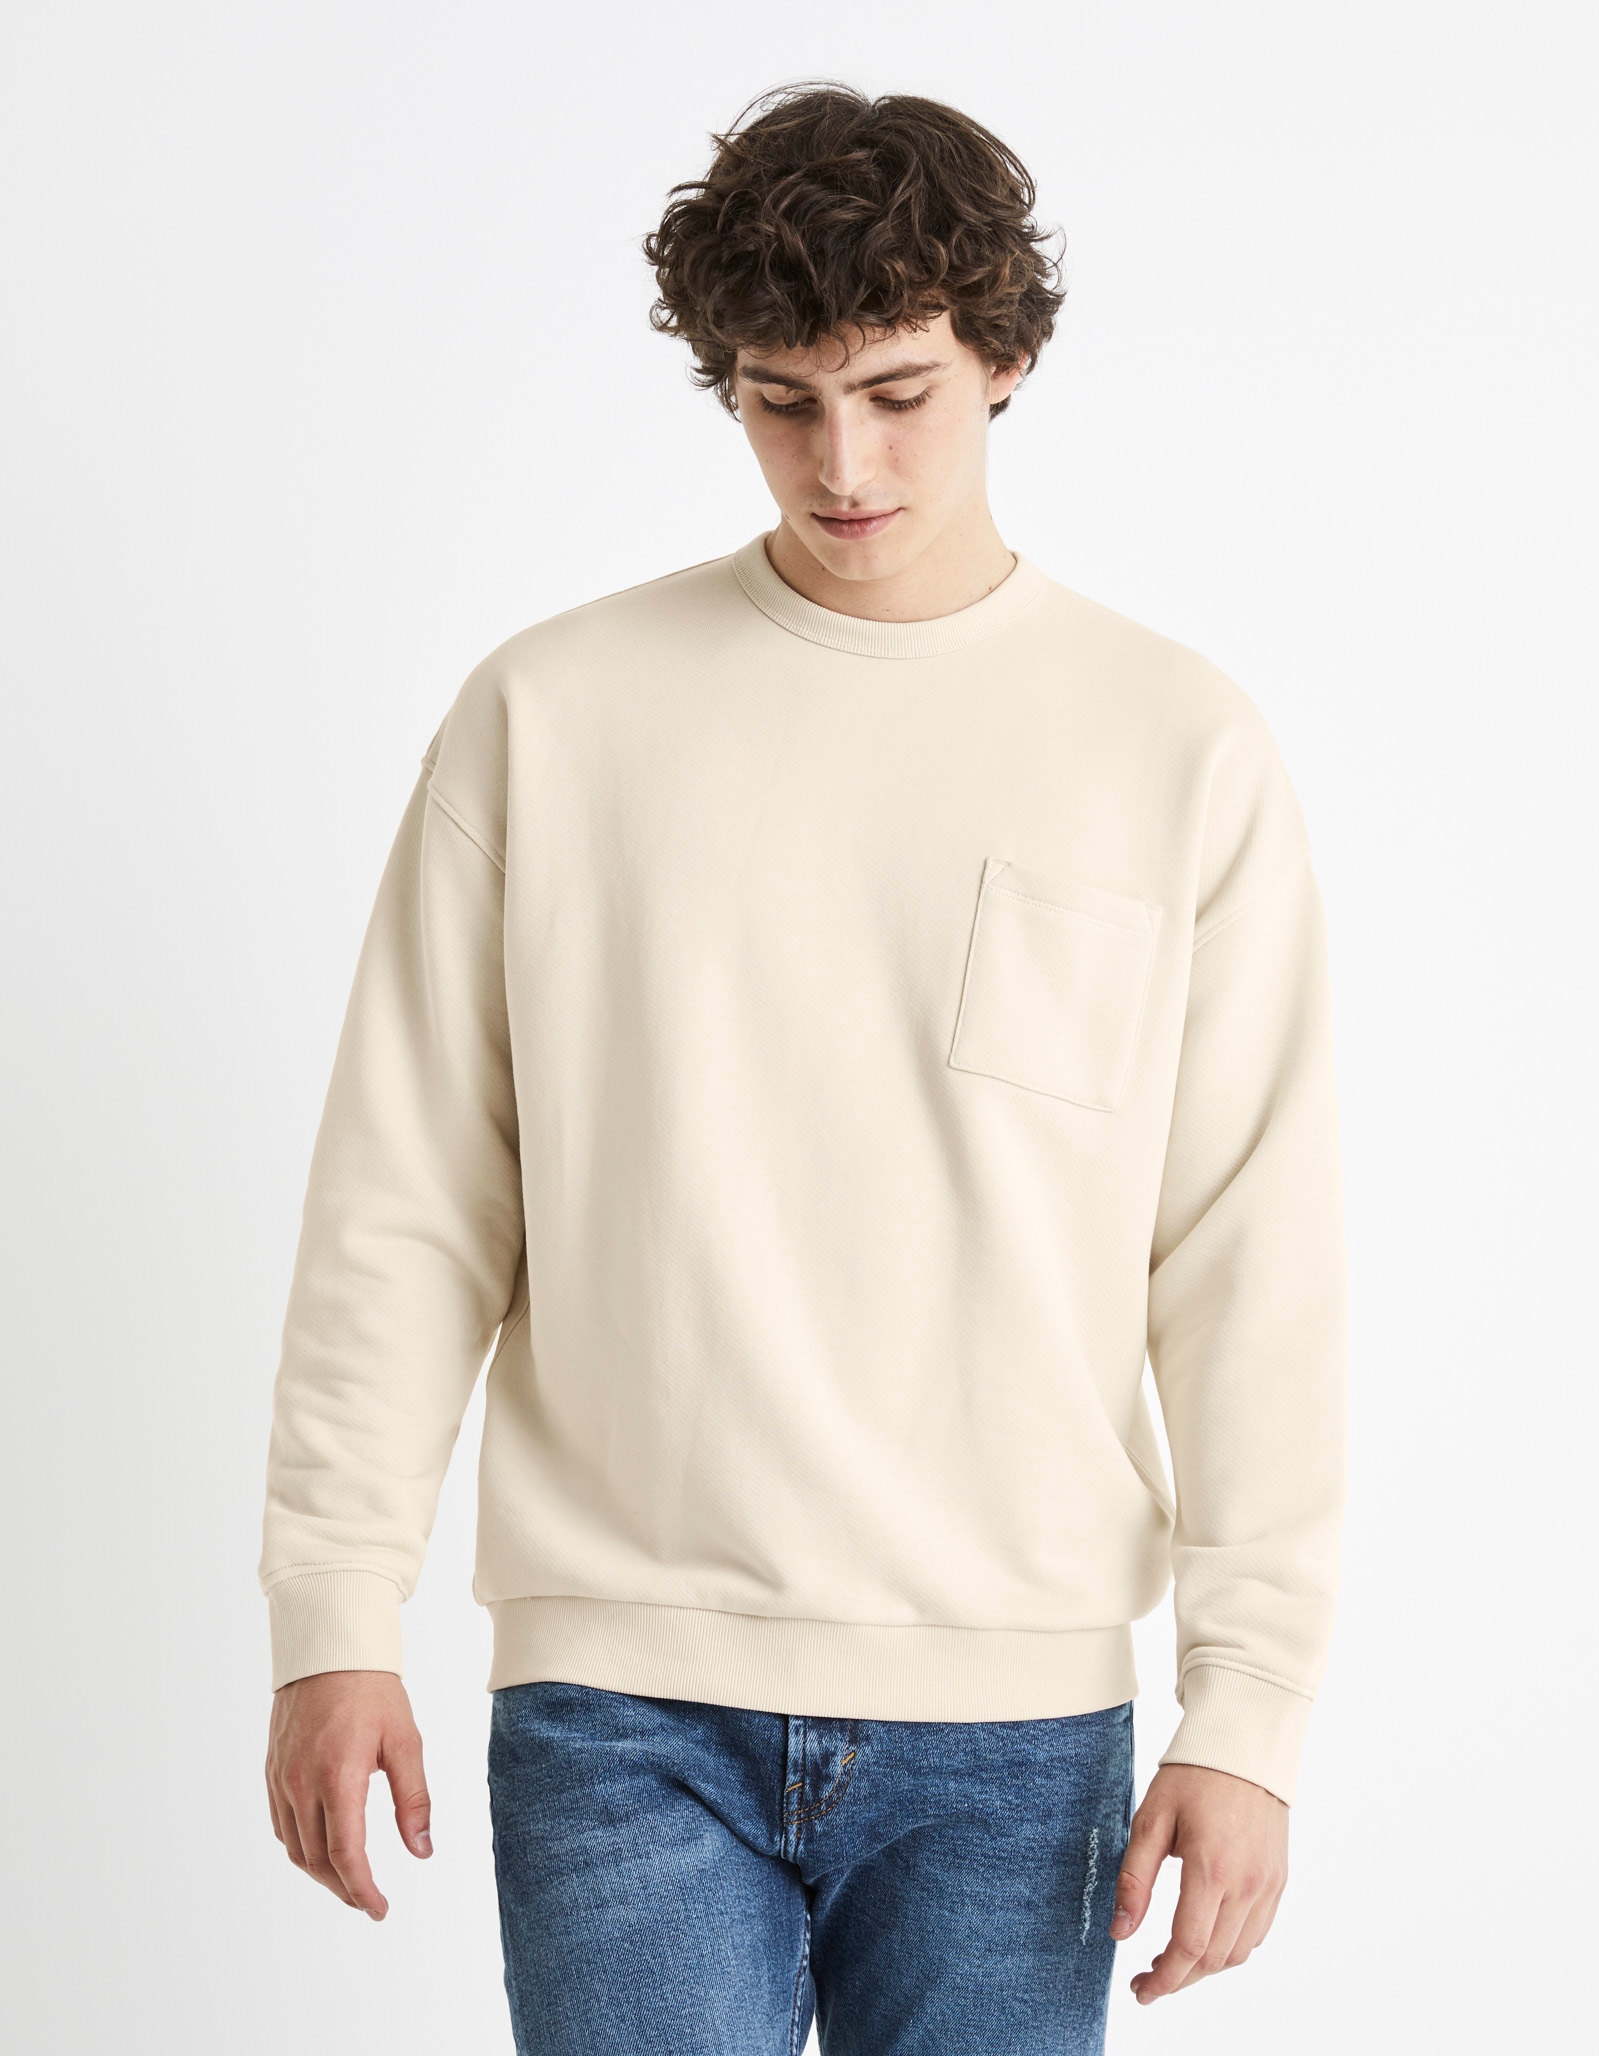 Men's Natural Solid Sweatshirts